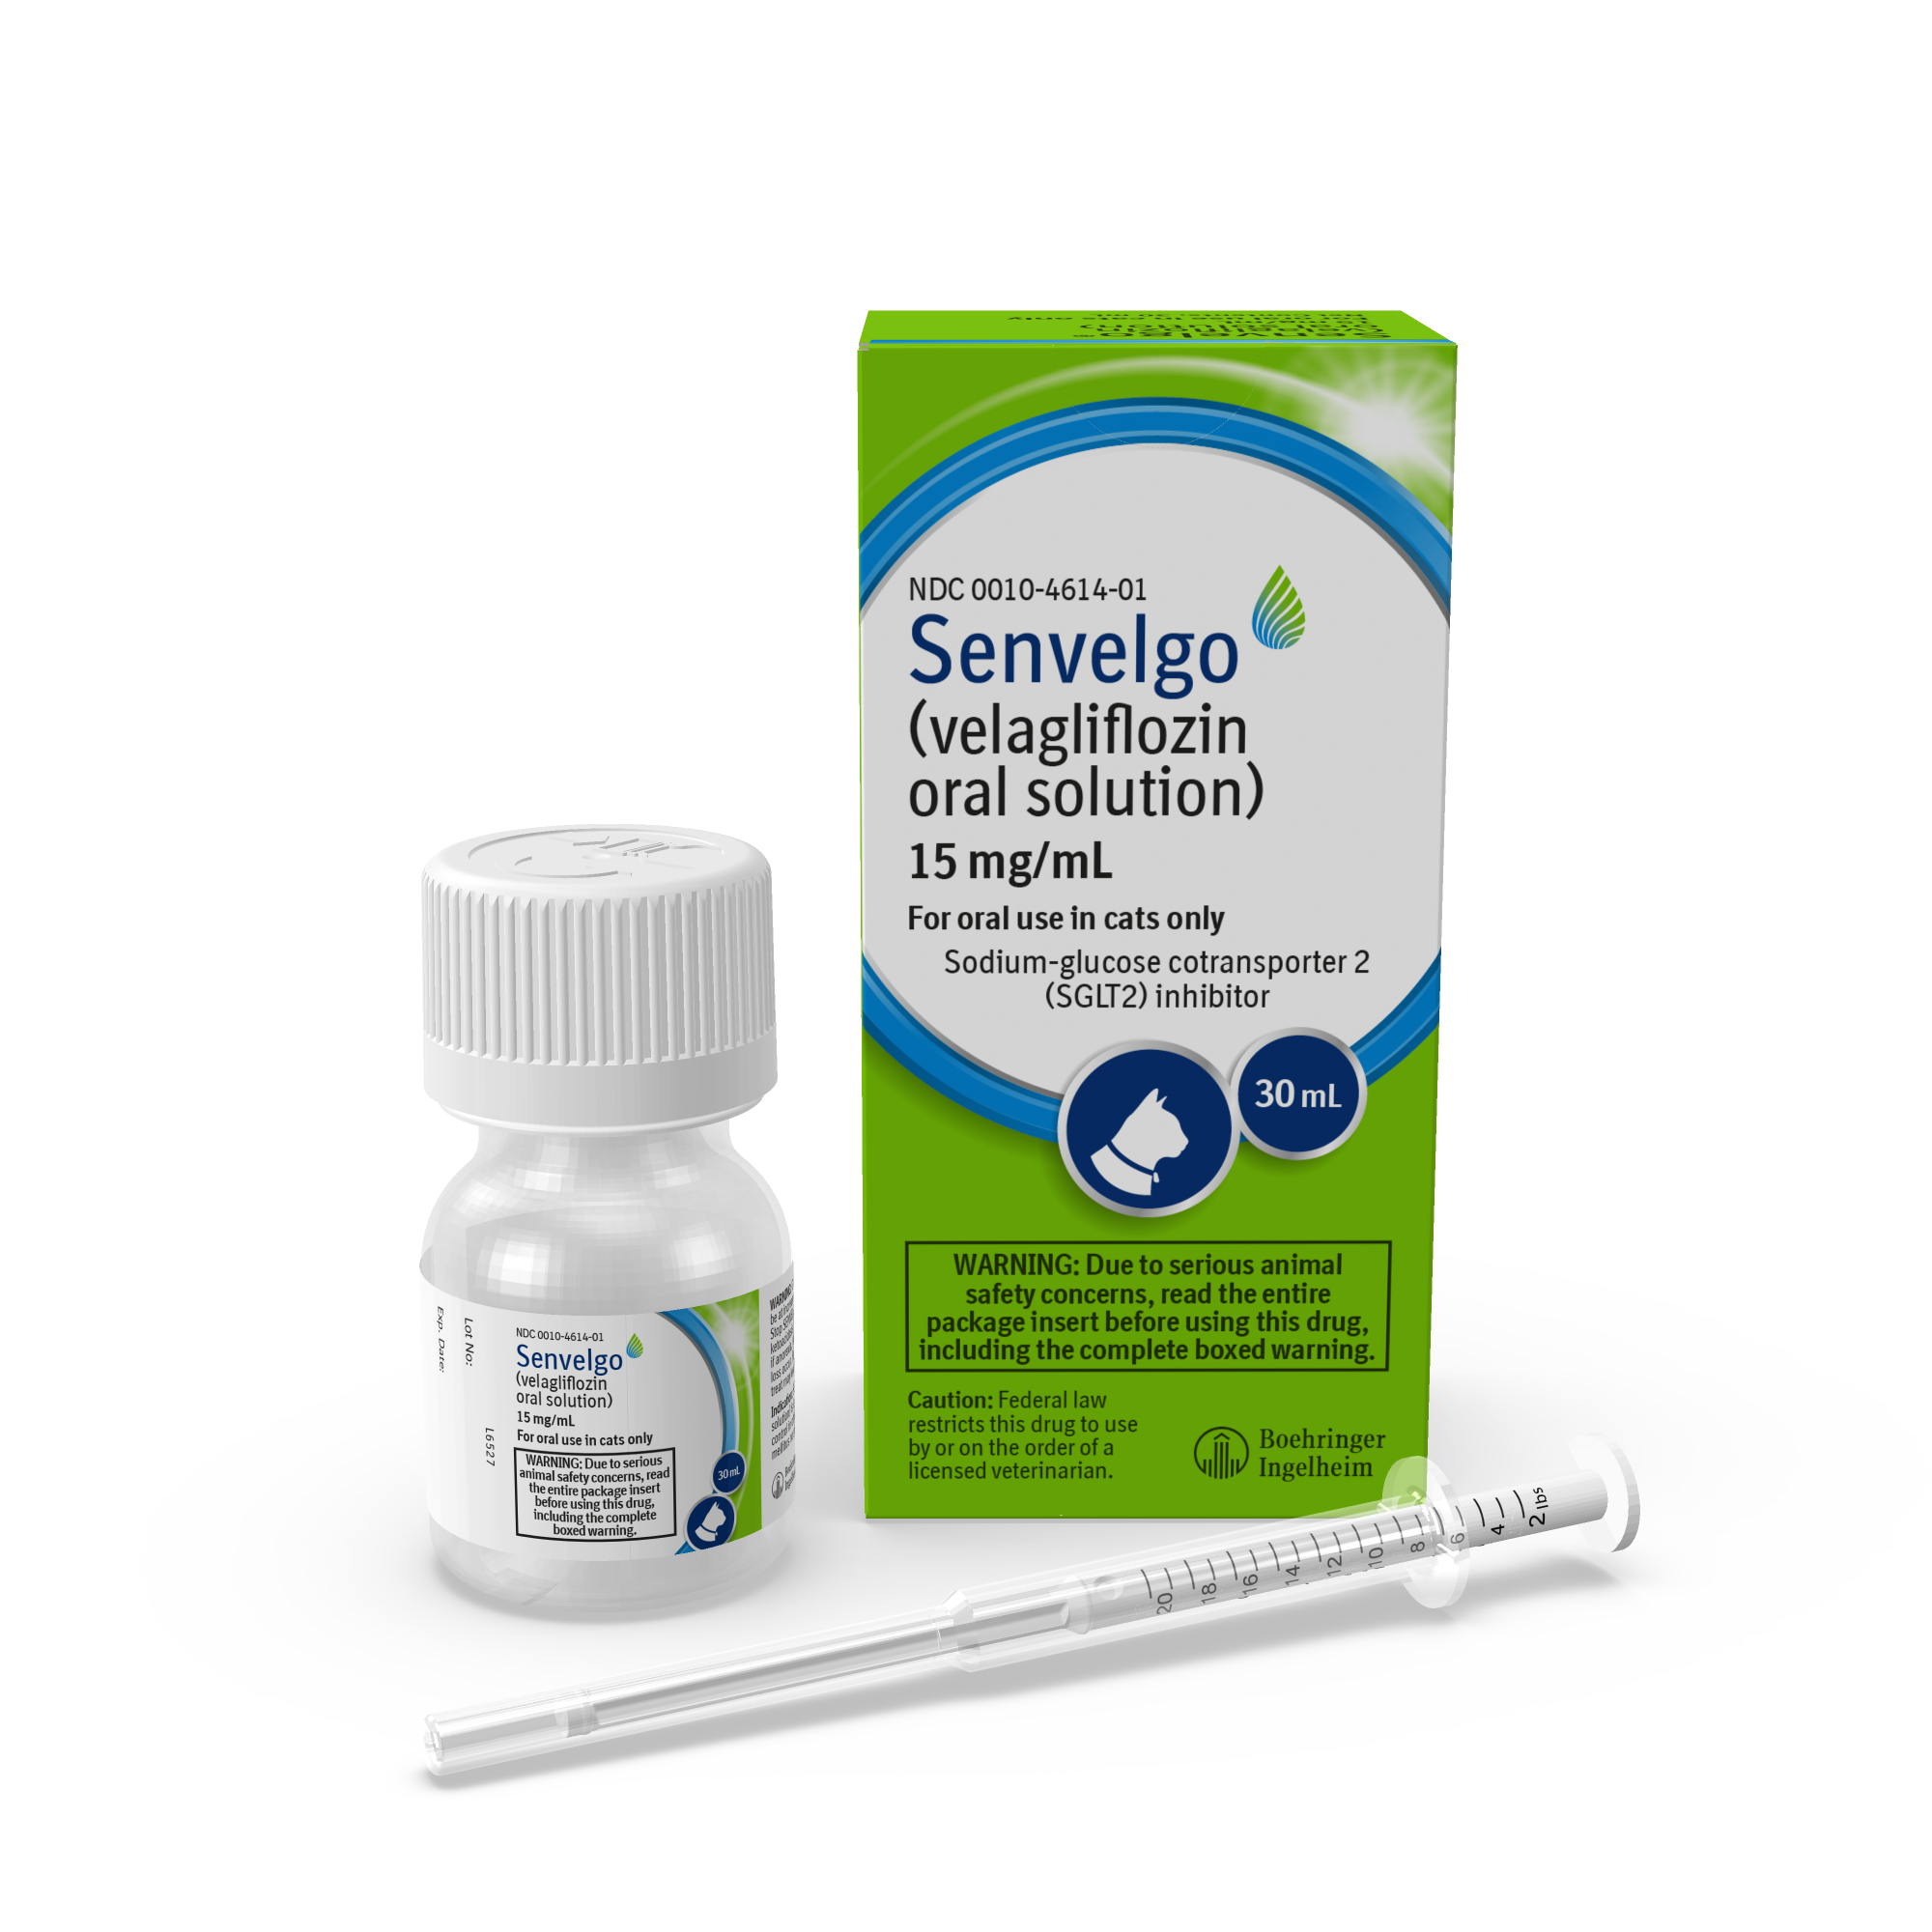 SENVELGO (velagliflozin oral solution) (Image courtesy of Boehringer Ingelheim) 